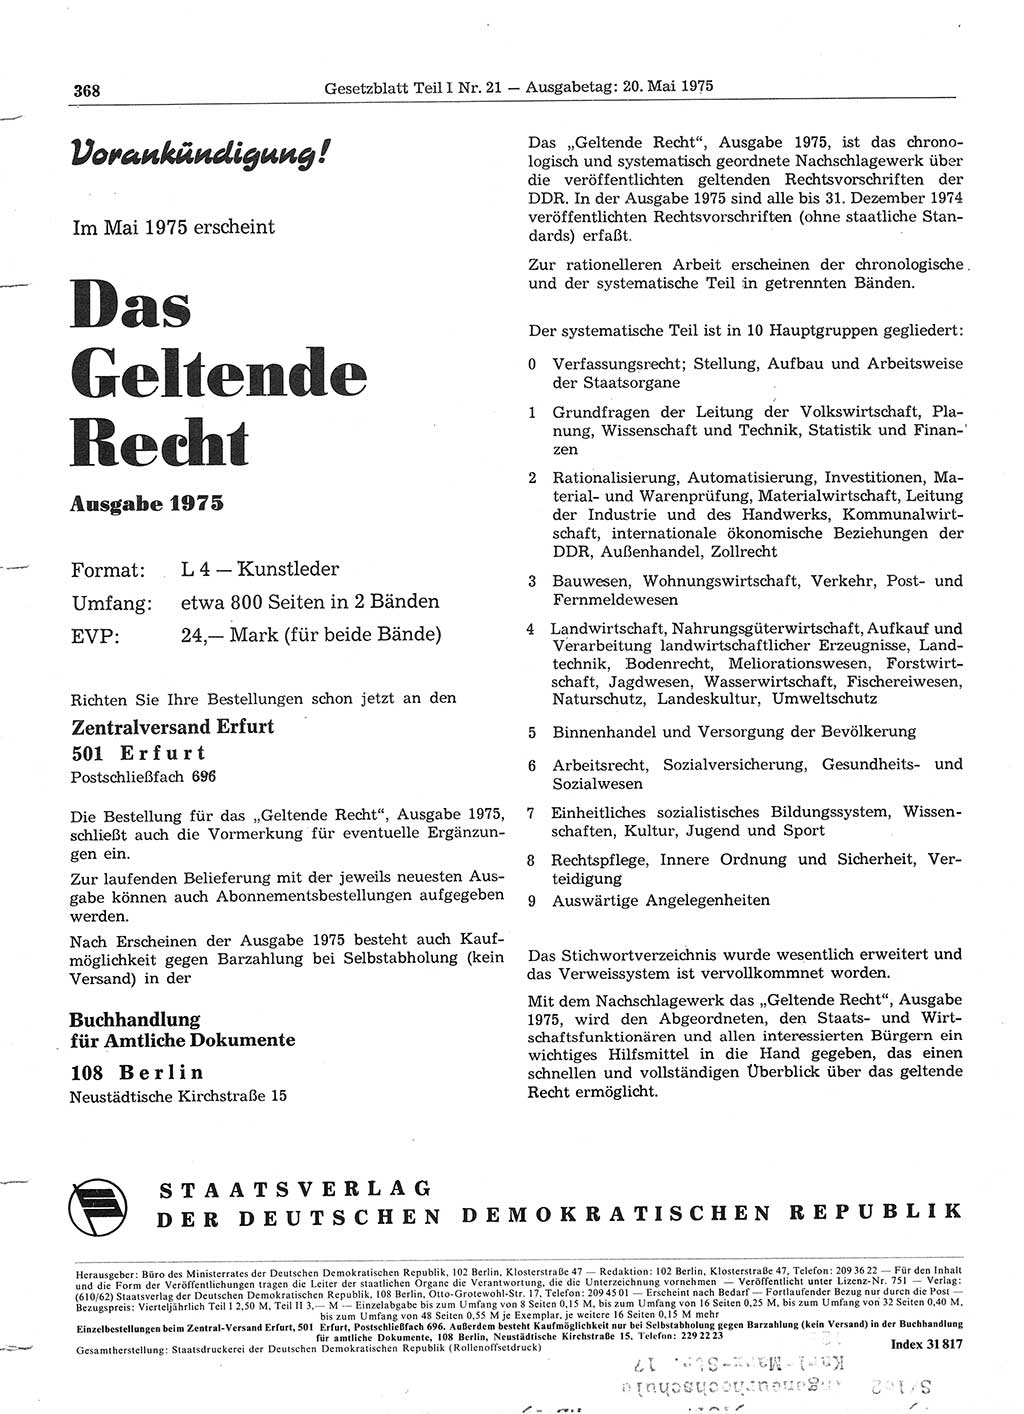 Gesetzblatt (GBl.) der Deutschen Demokratischen Republik (DDR) Teil Ⅰ 1975, Seite 368 (GBl. DDR Ⅰ 1975, S. 368)